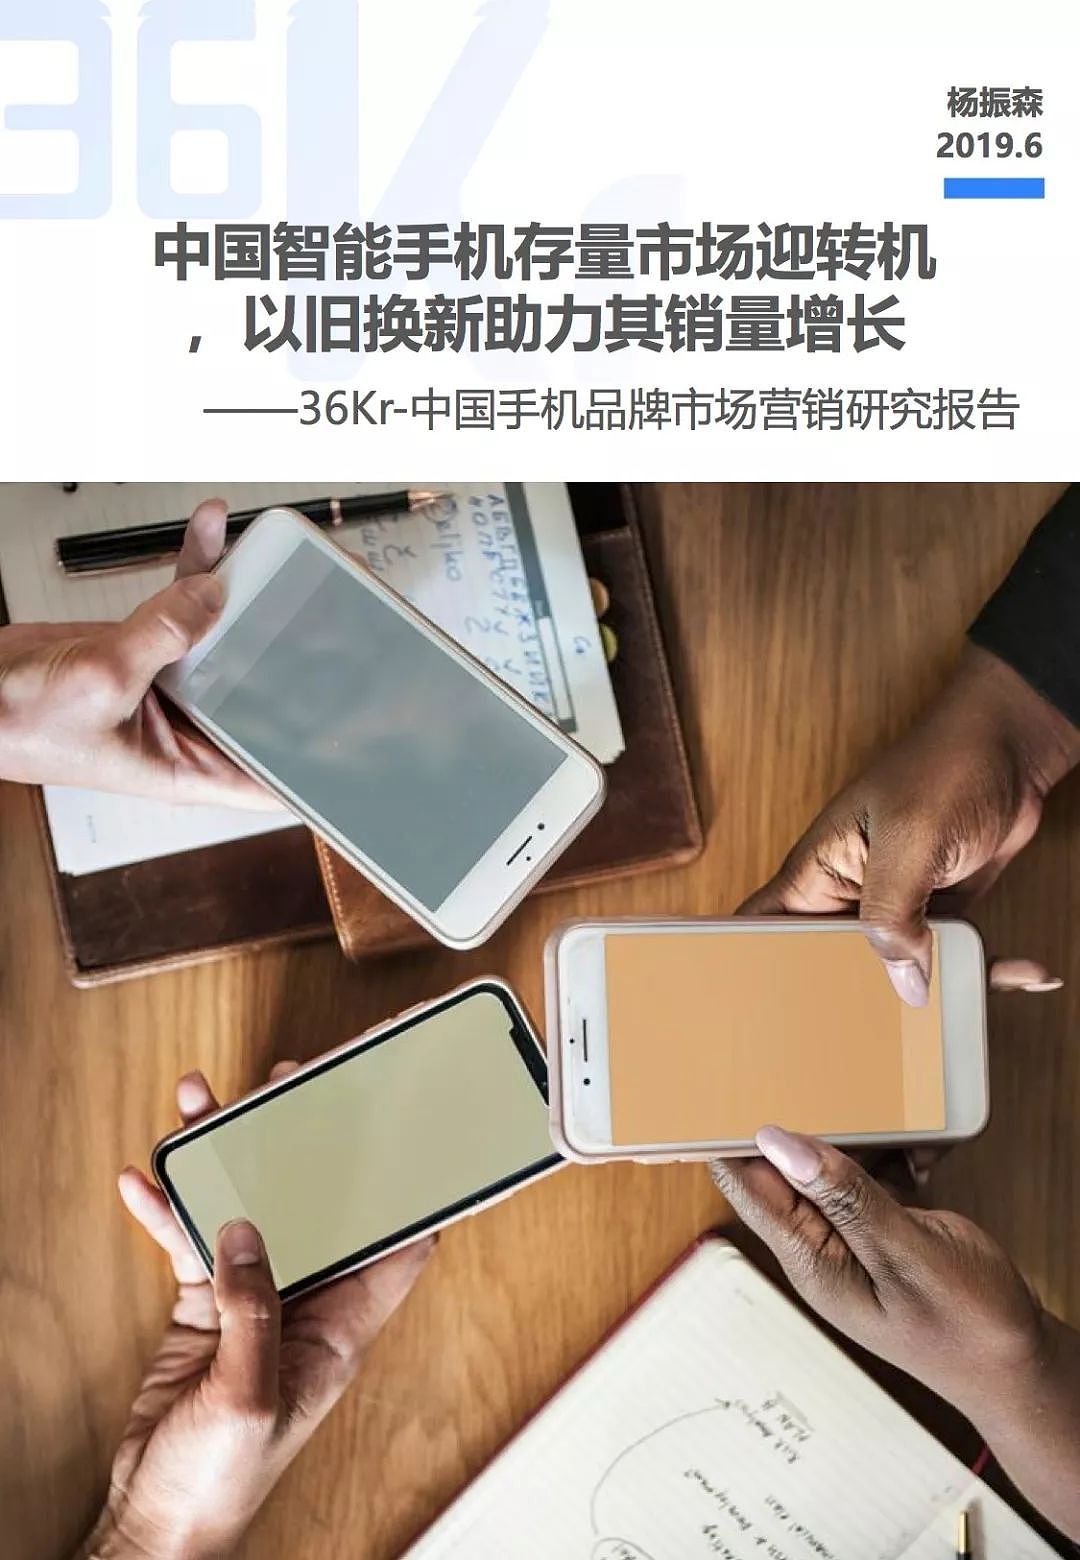 中国手机品牌市场营销研究报告 | 36氪研究 - 2